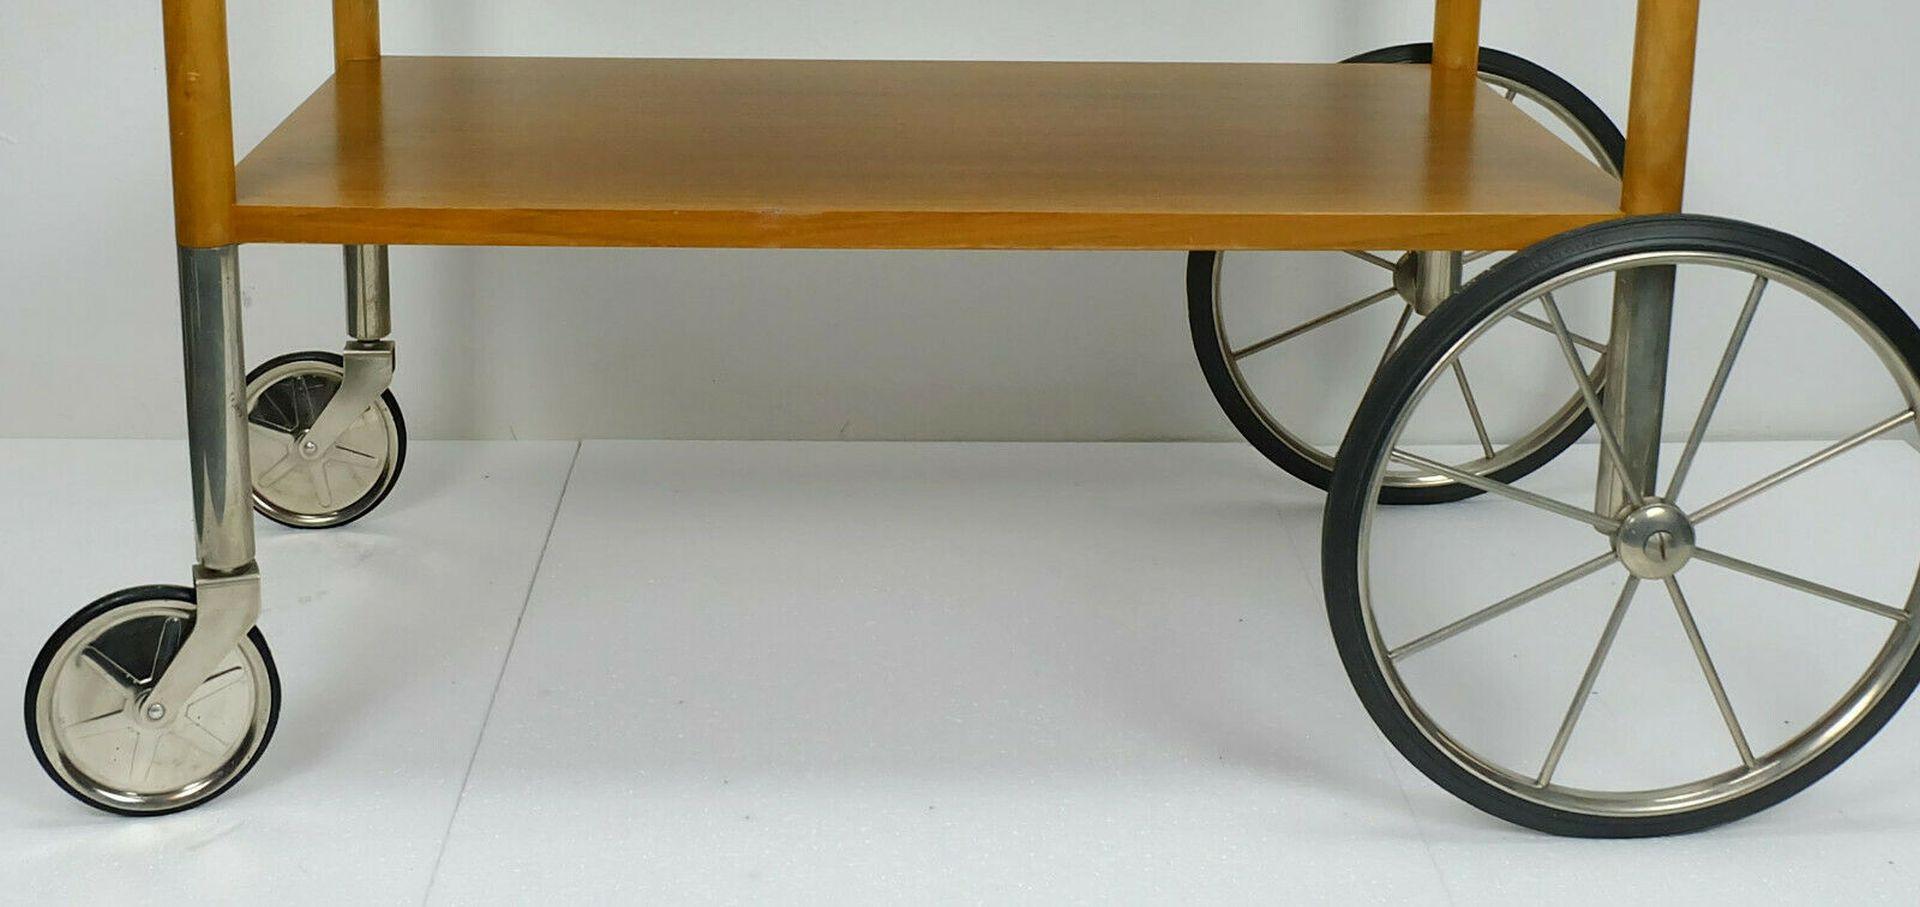 Rare chariot à thé des années 1960 fabriqué par Wilhelm Renz Furniture Company. Design/One avec 2 grandes et 2 petites roues. Fabriqué en noyer (massif et plaqué) et en métal nickelé. Les roues sont en métal et en caoutchouc.

Pré-utilisé, bon